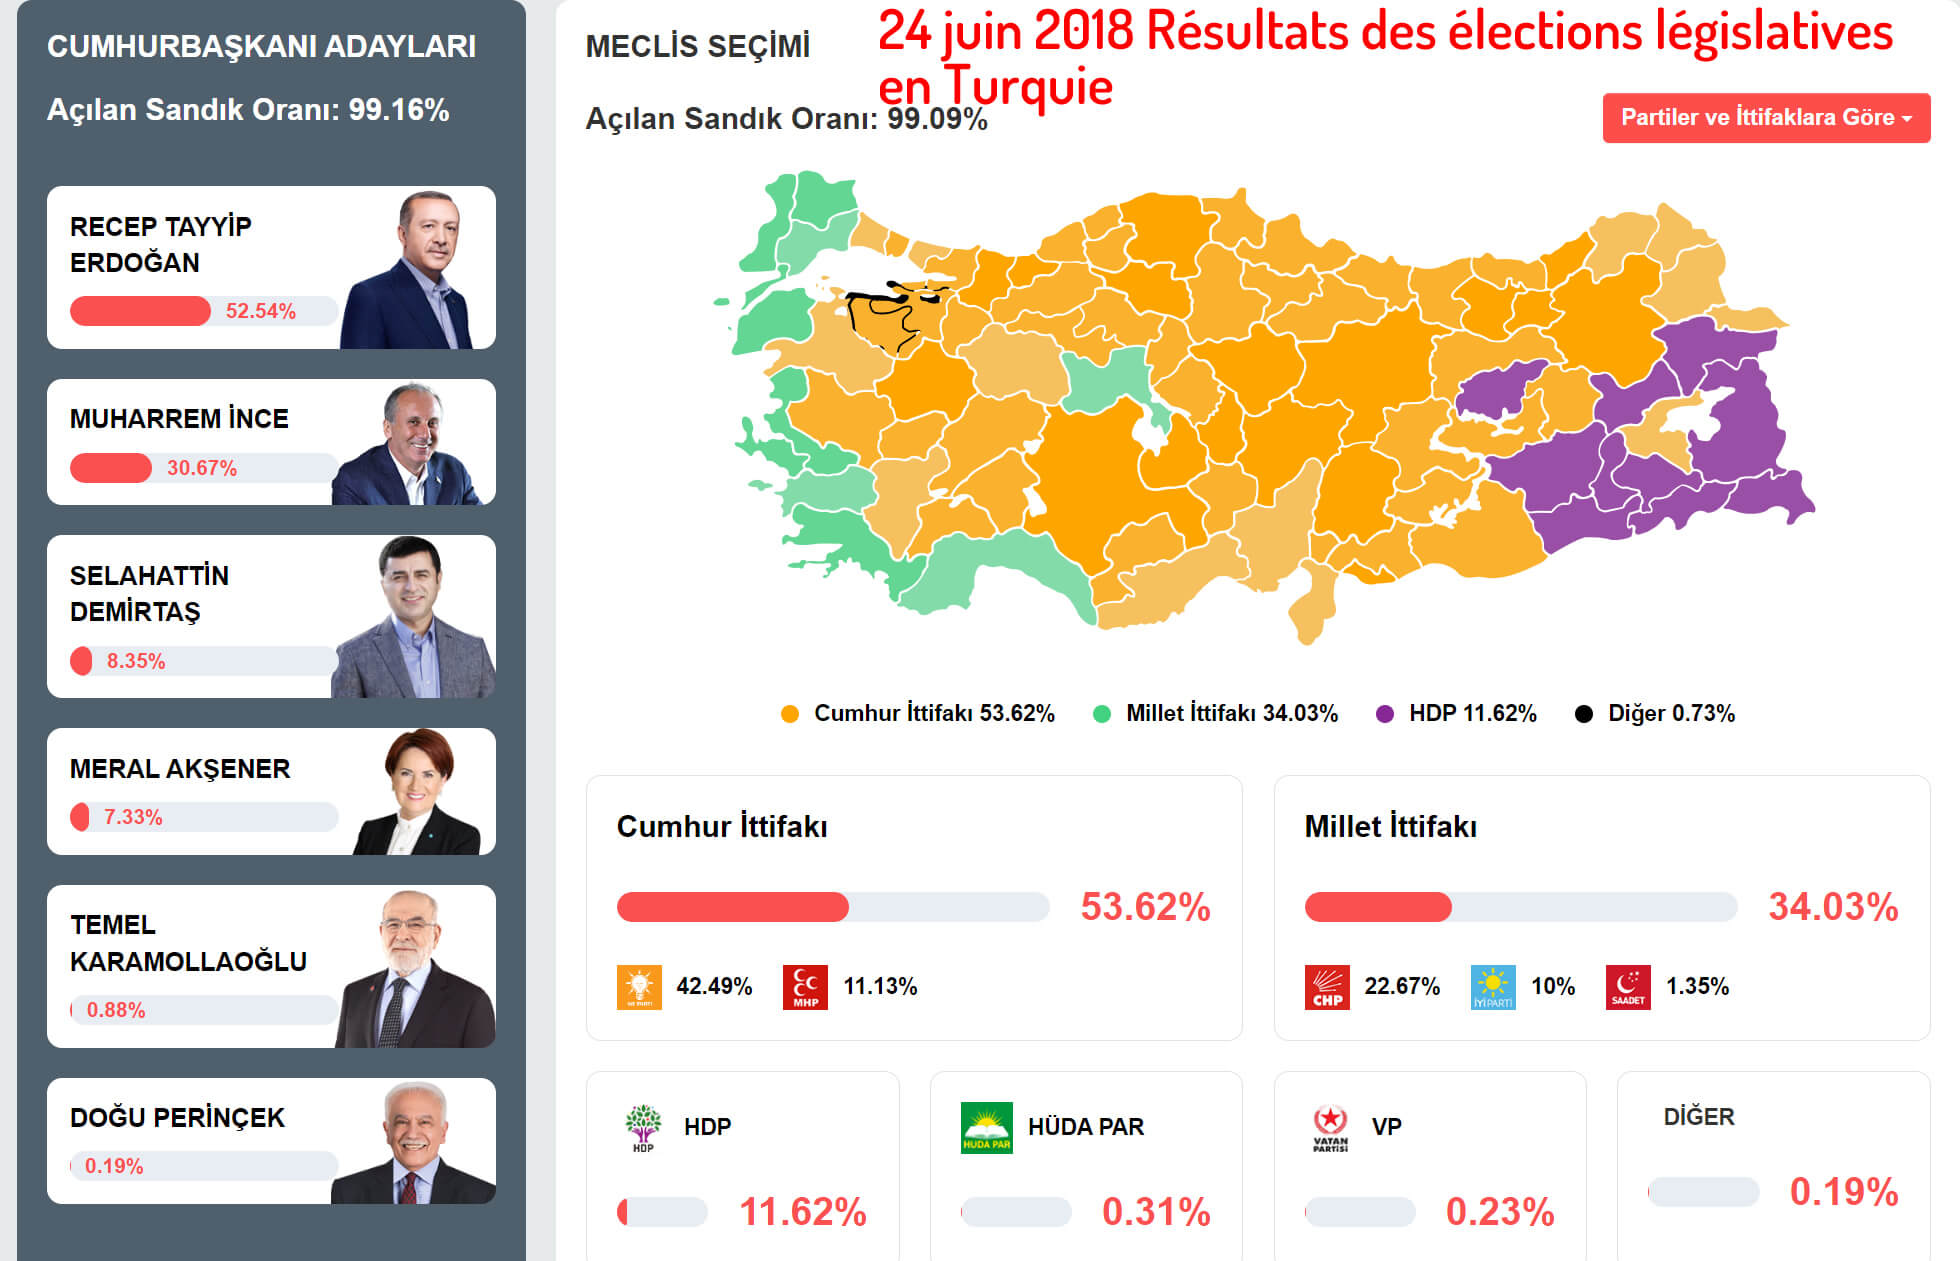 24 juin 2018 Résultats des élections législatives en Turquie